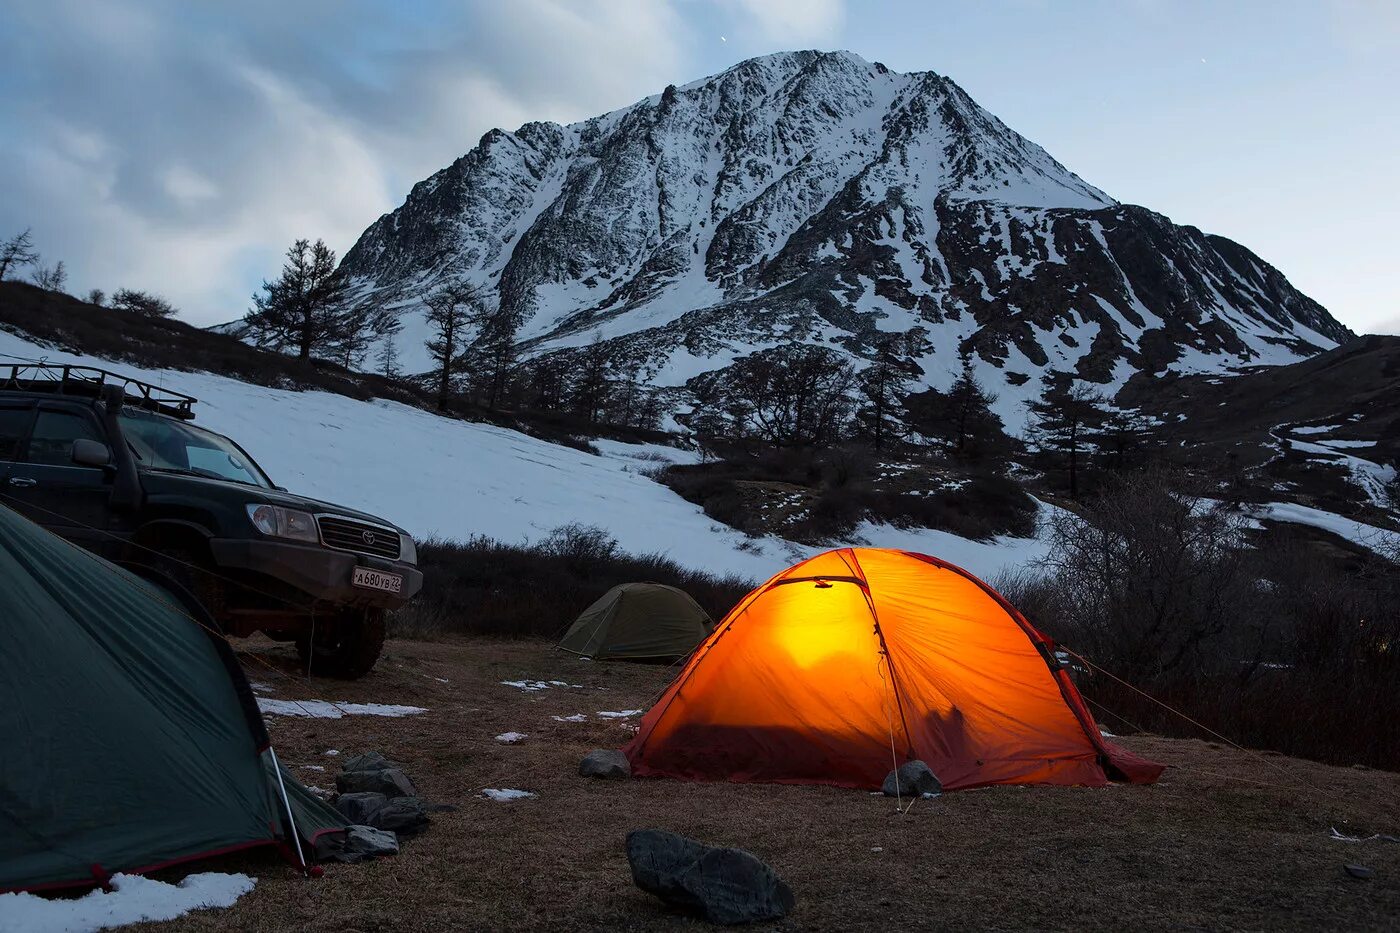 Горный Алтай палаточный городок. Автокемпинг горный Алтай. Горный Алтай палаточные лагеря. Кемпинг горный Алтай с палаткой.